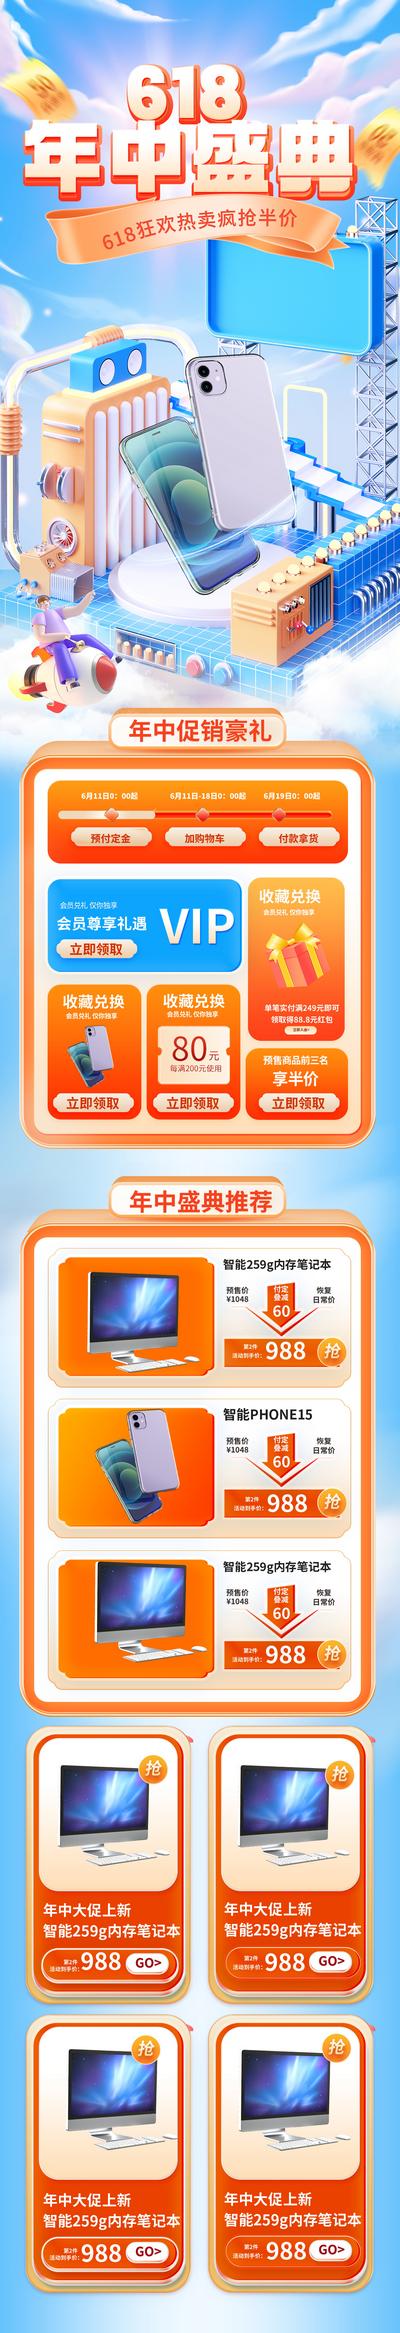 南门网 电商 科技 促销 618 双十一 大促 数码 首页 手机 购物节 3C 专题